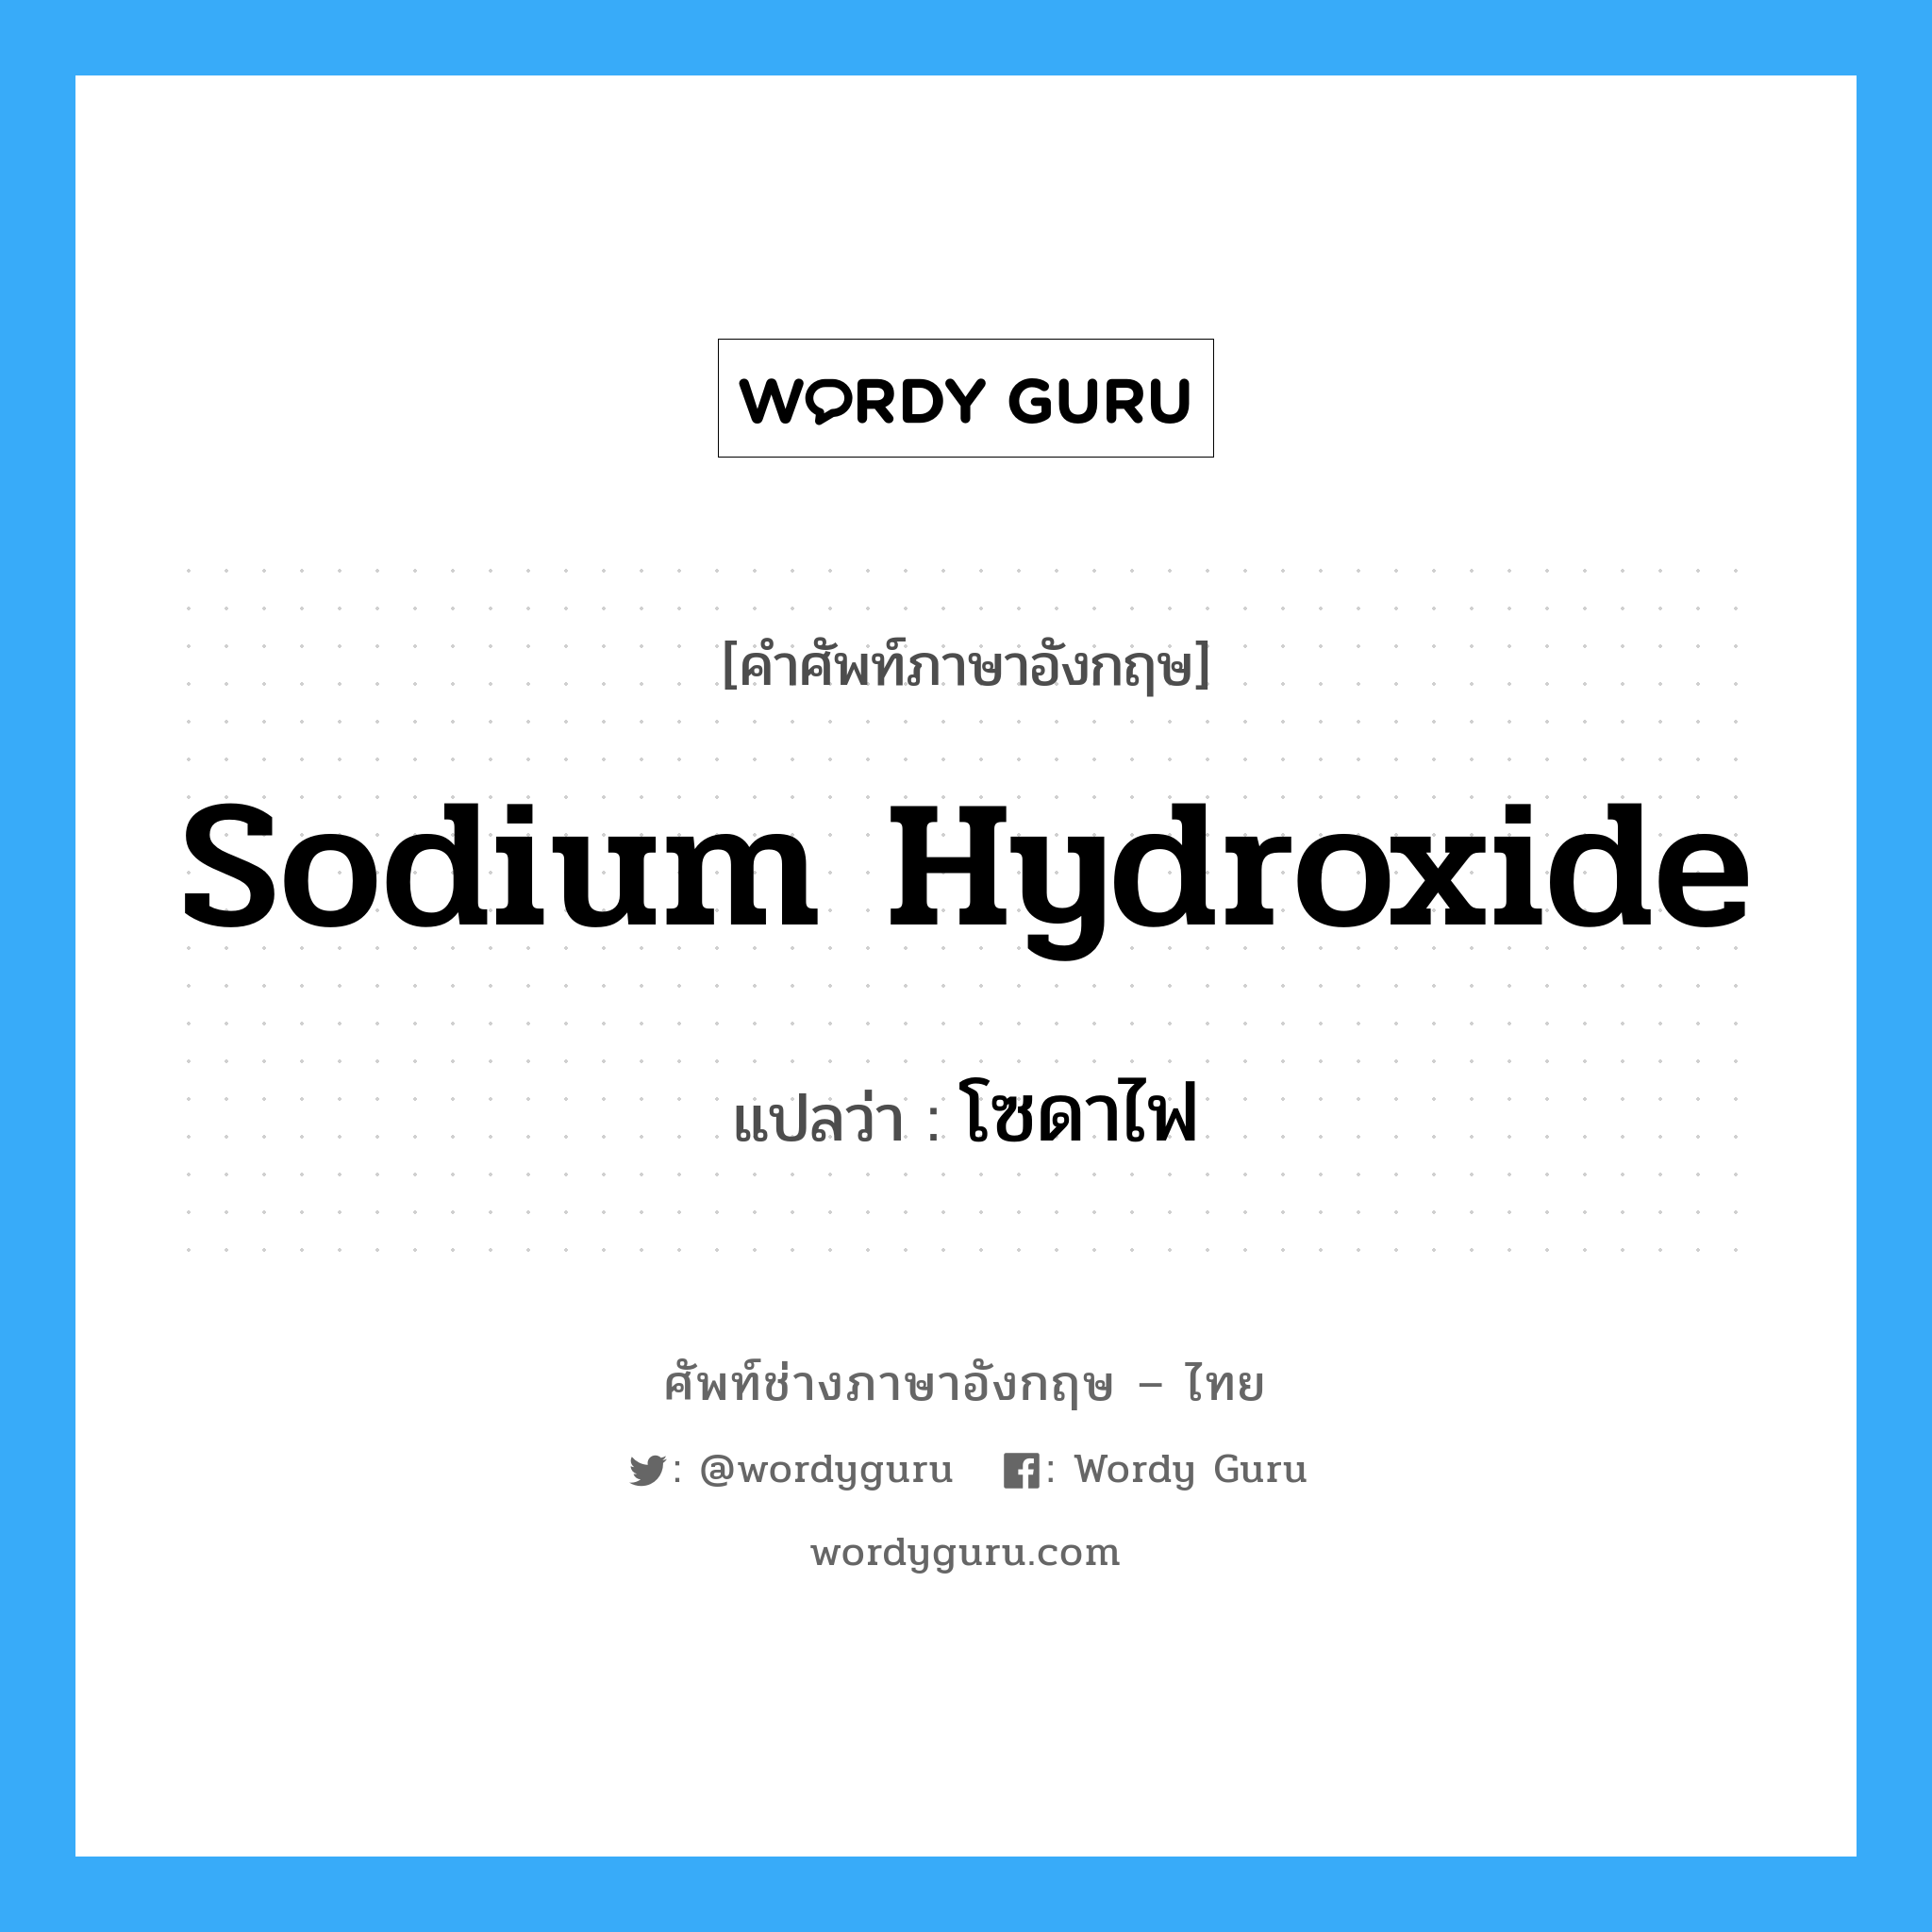 sodium hydroxide แปลว่า?, คำศัพท์ช่างภาษาอังกฤษ - ไทย sodium hydroxide คำศัพท์ภาษาอังกฤษ sodium hydroxide แปลว่า โซดาไฟ